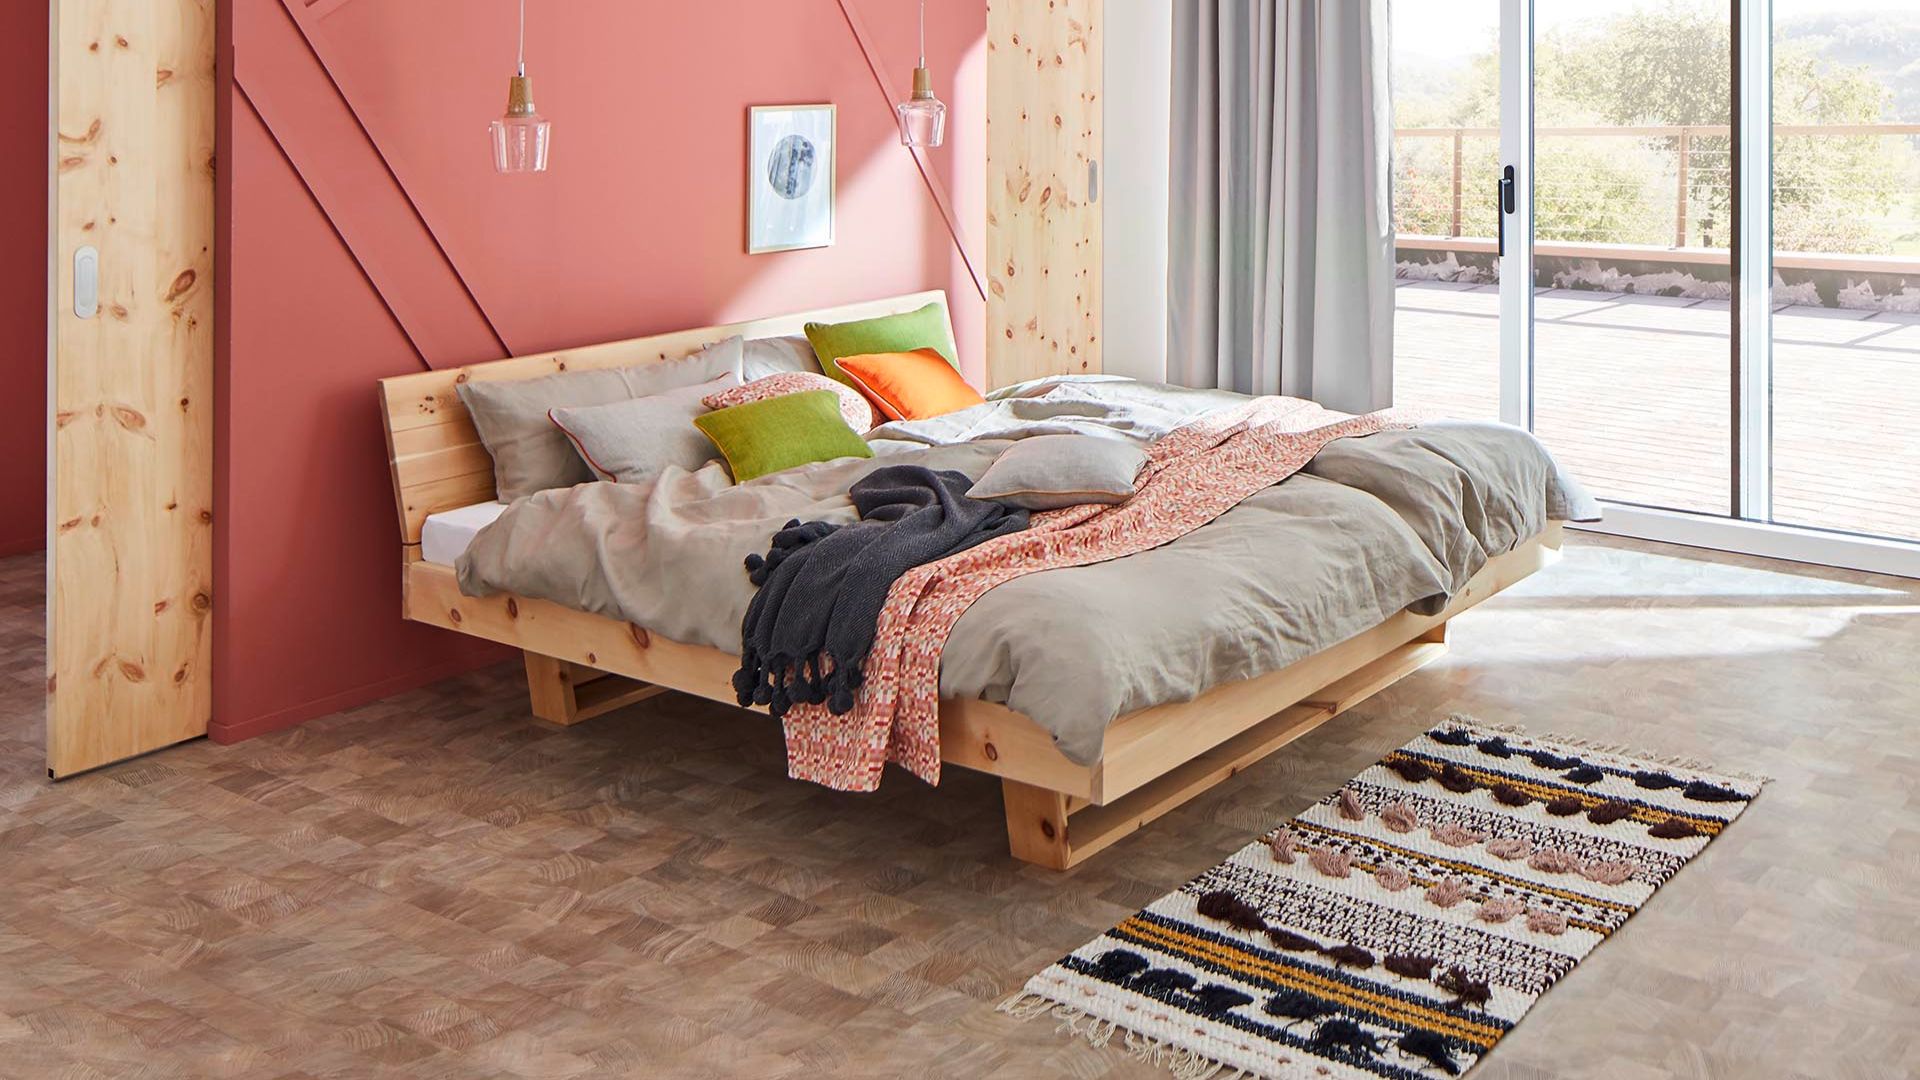 Quiétude - Le design aux proportions agréables et sobres de ce lit se distingue par sa forme intemporelle.